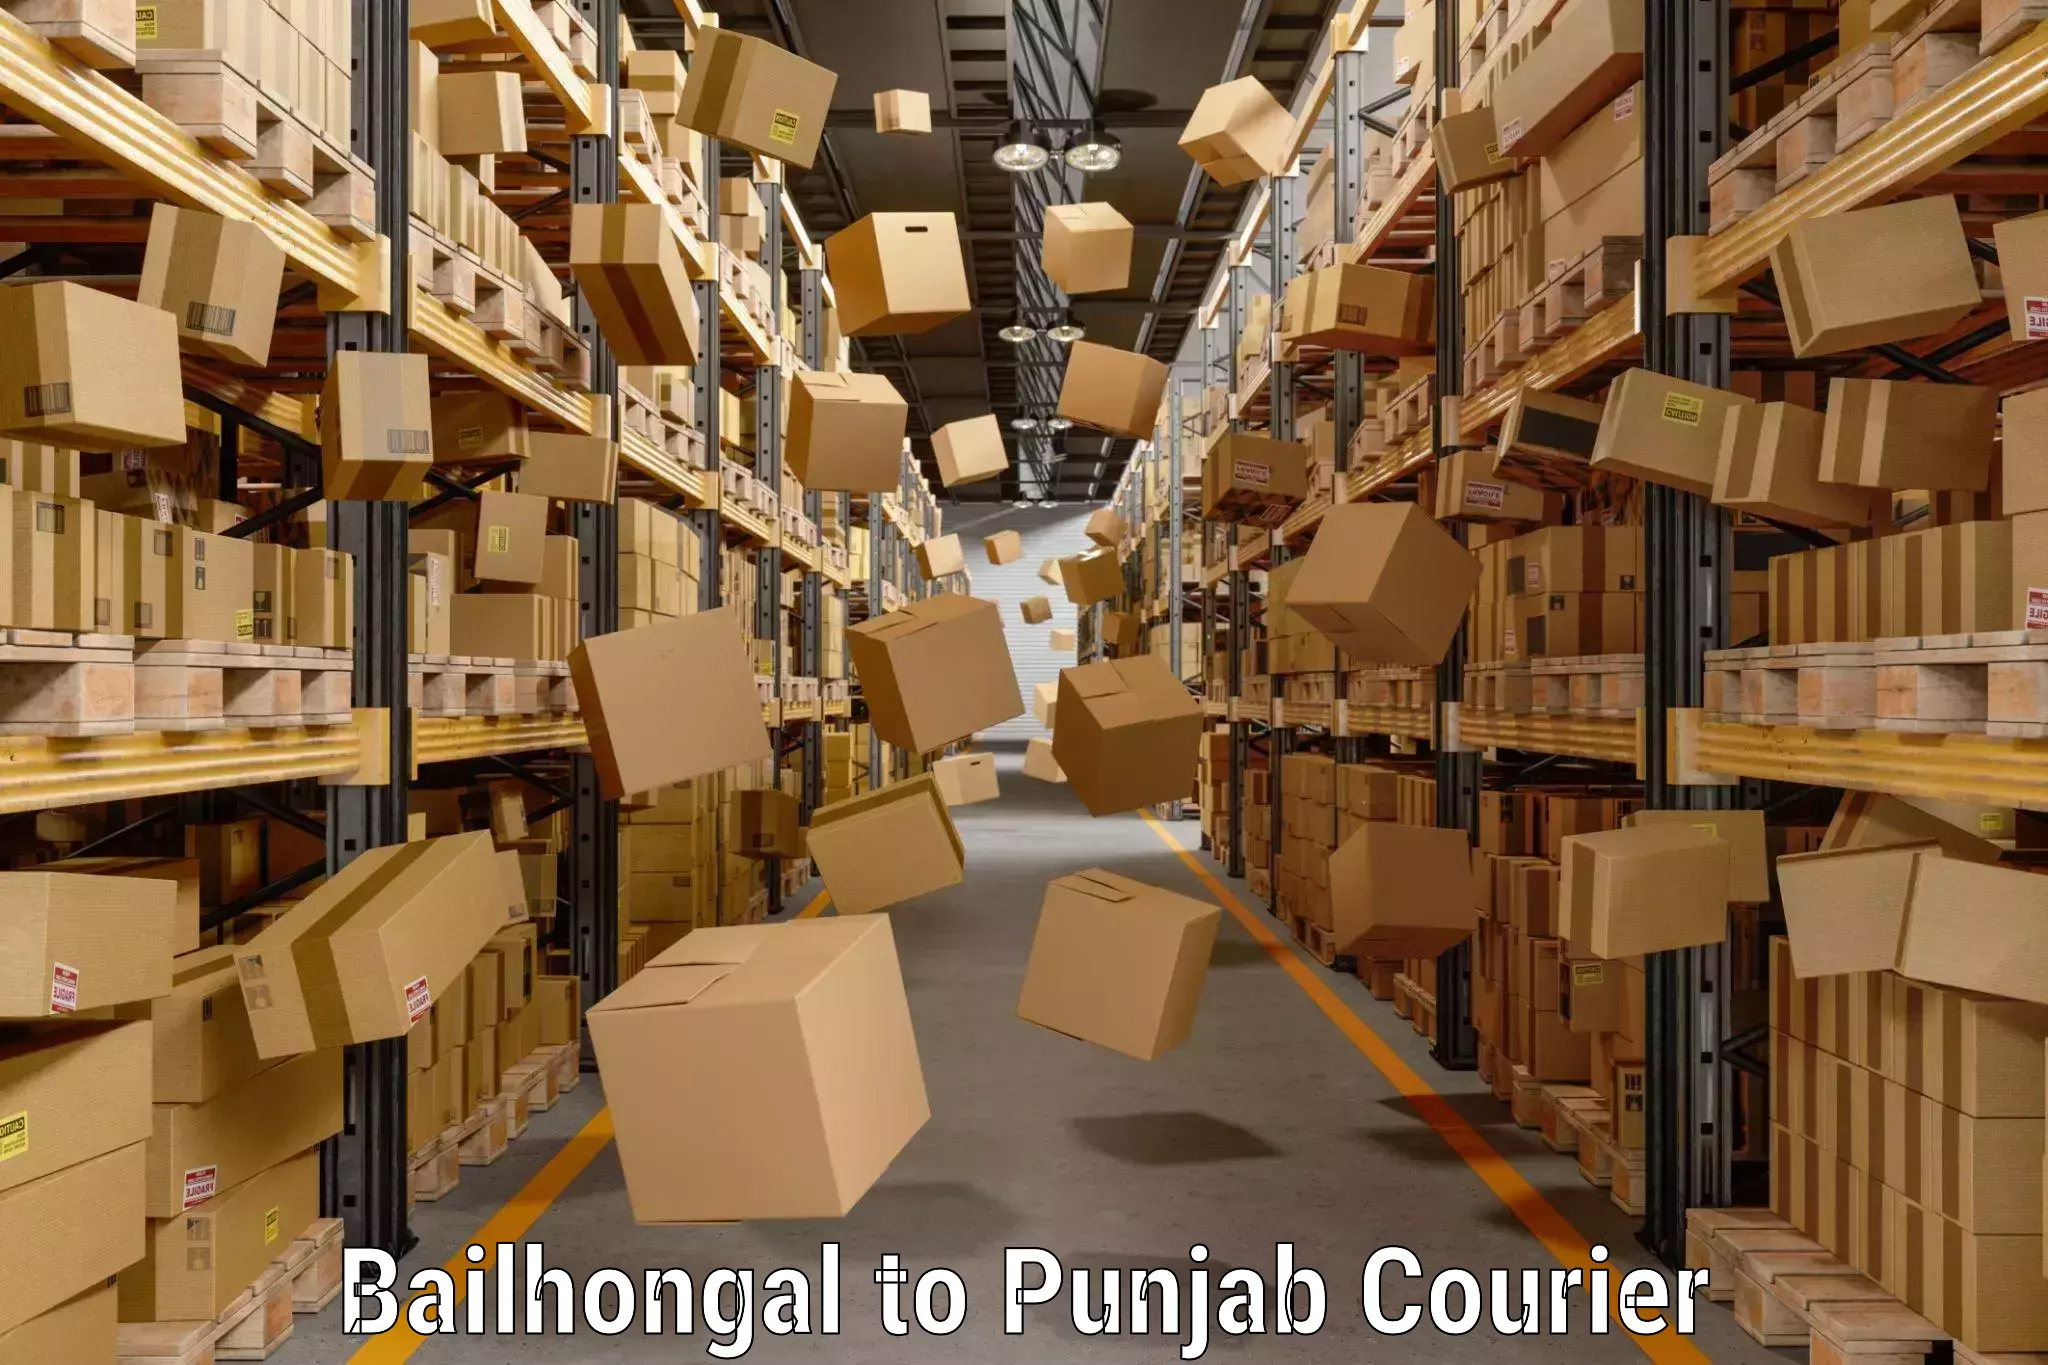 Luggage transport solutions Bailhongal to Punjab